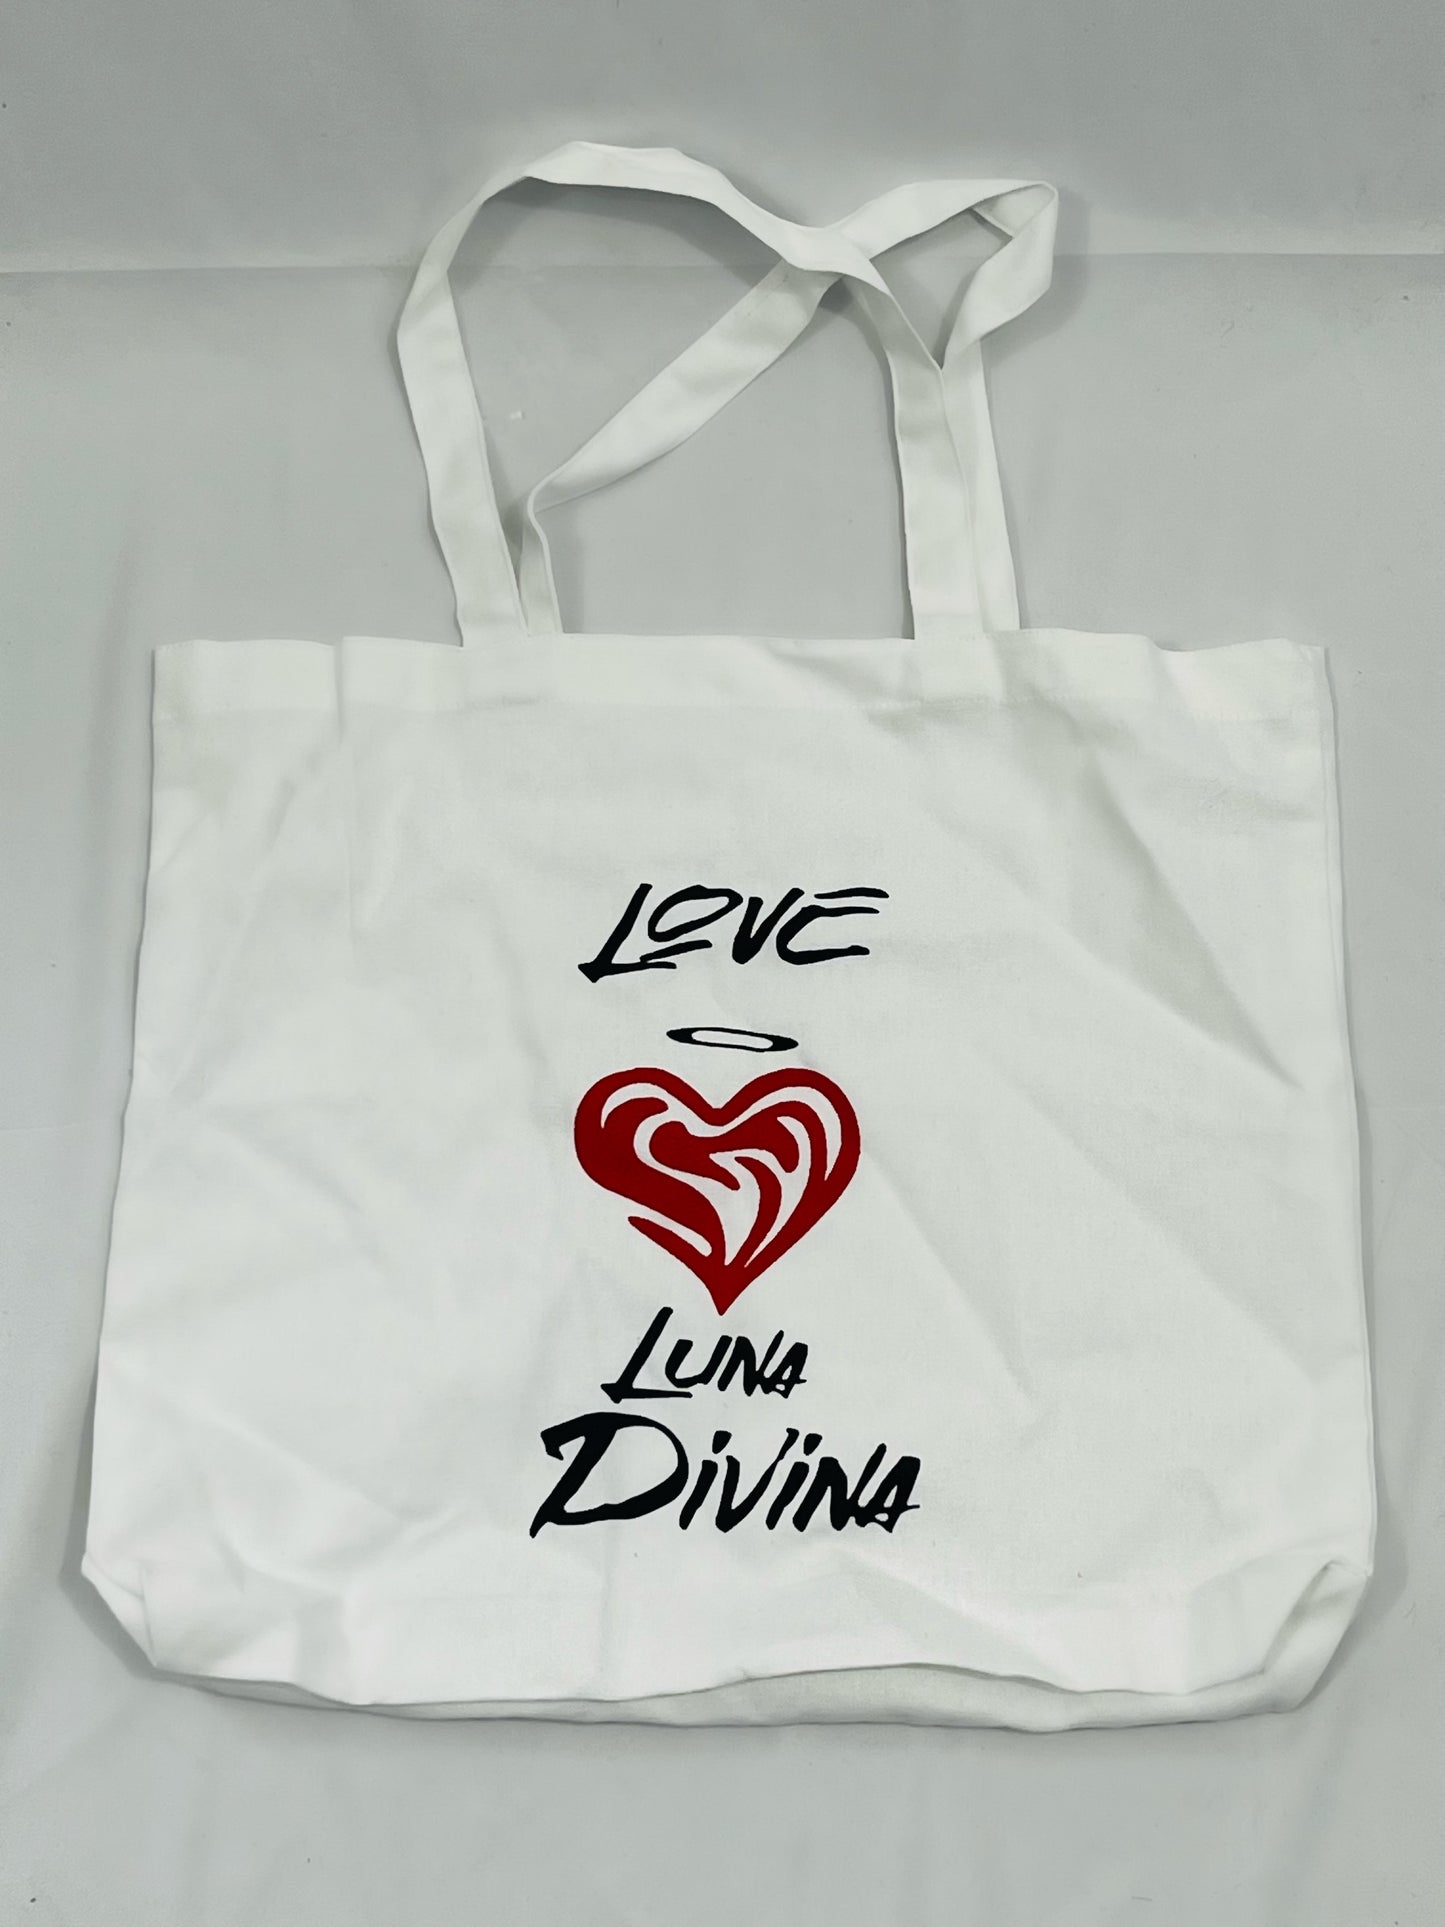 Love Luna divina tote bag